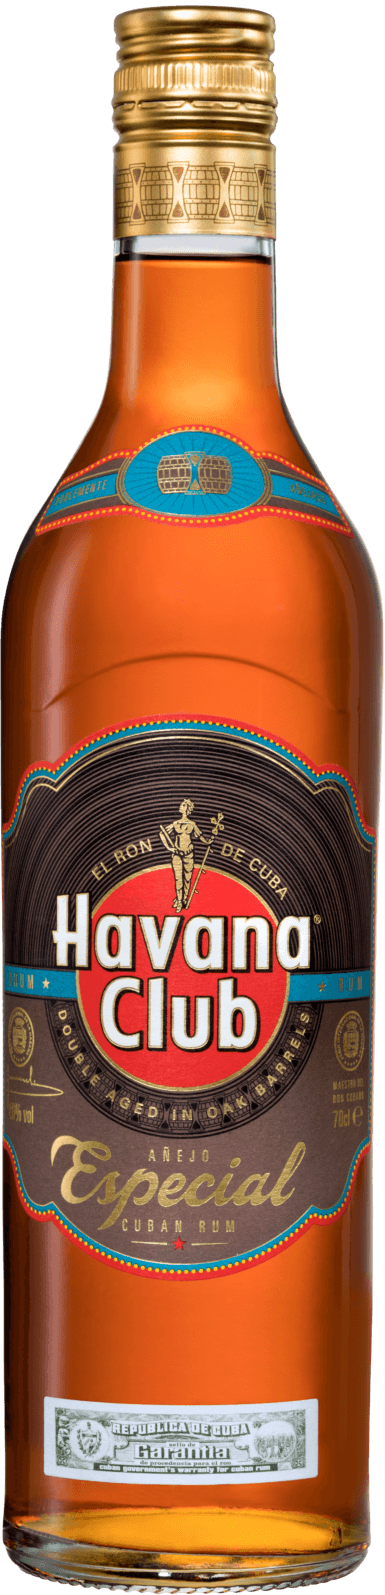 Golden rum Havana Club Especial | Havana Club